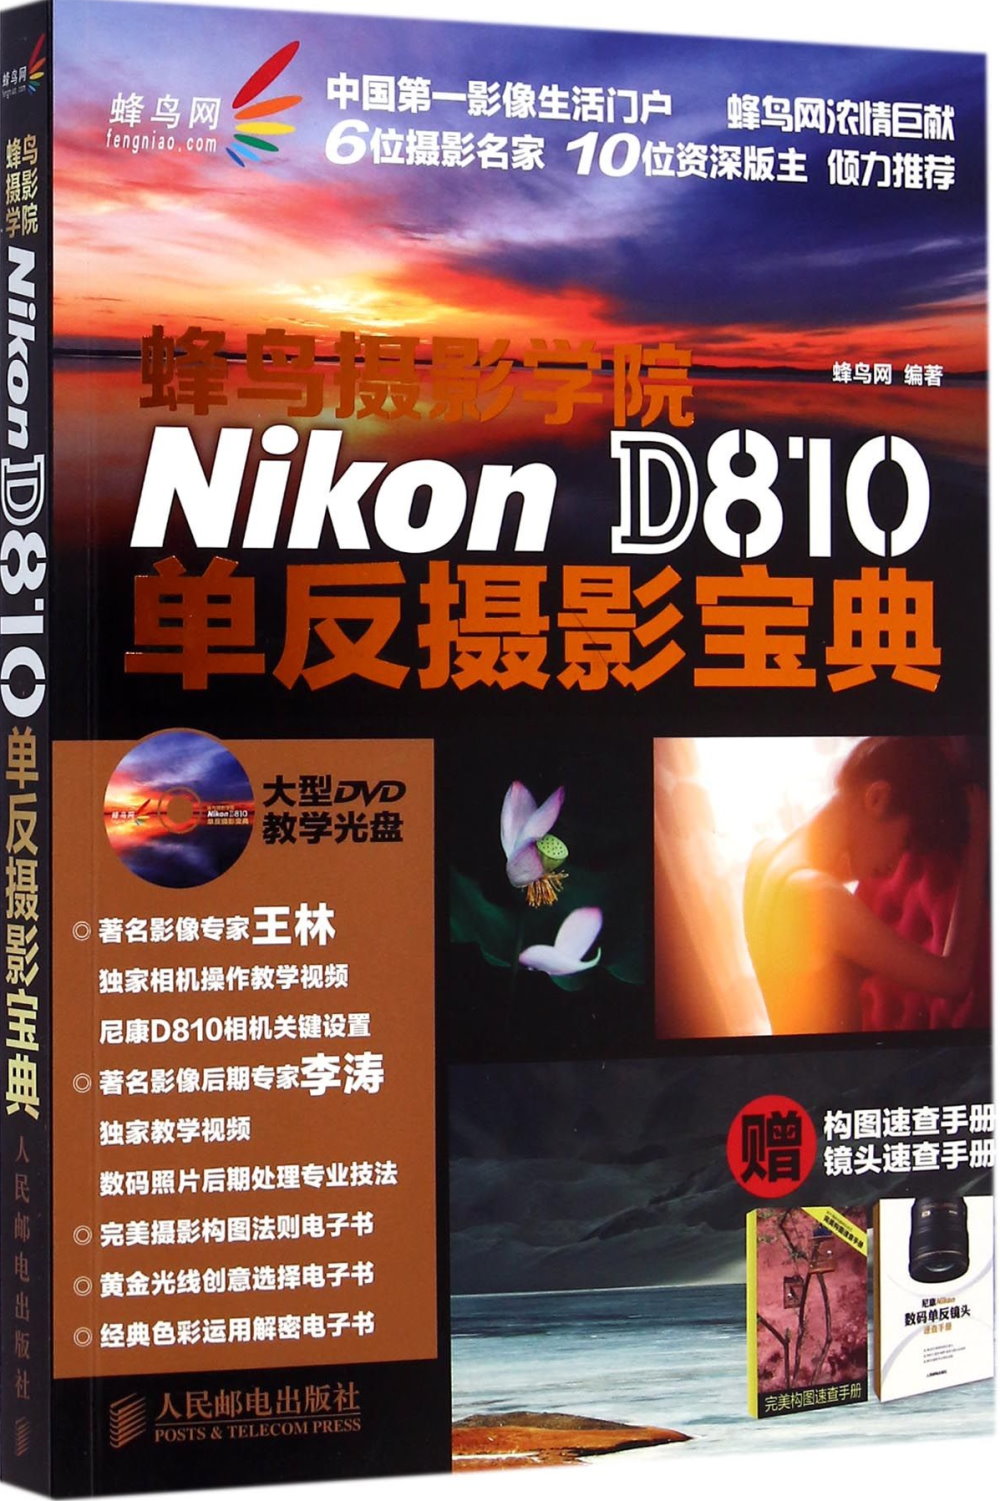 蜂鳥攝影學院Nikon D810單反攝影寶典